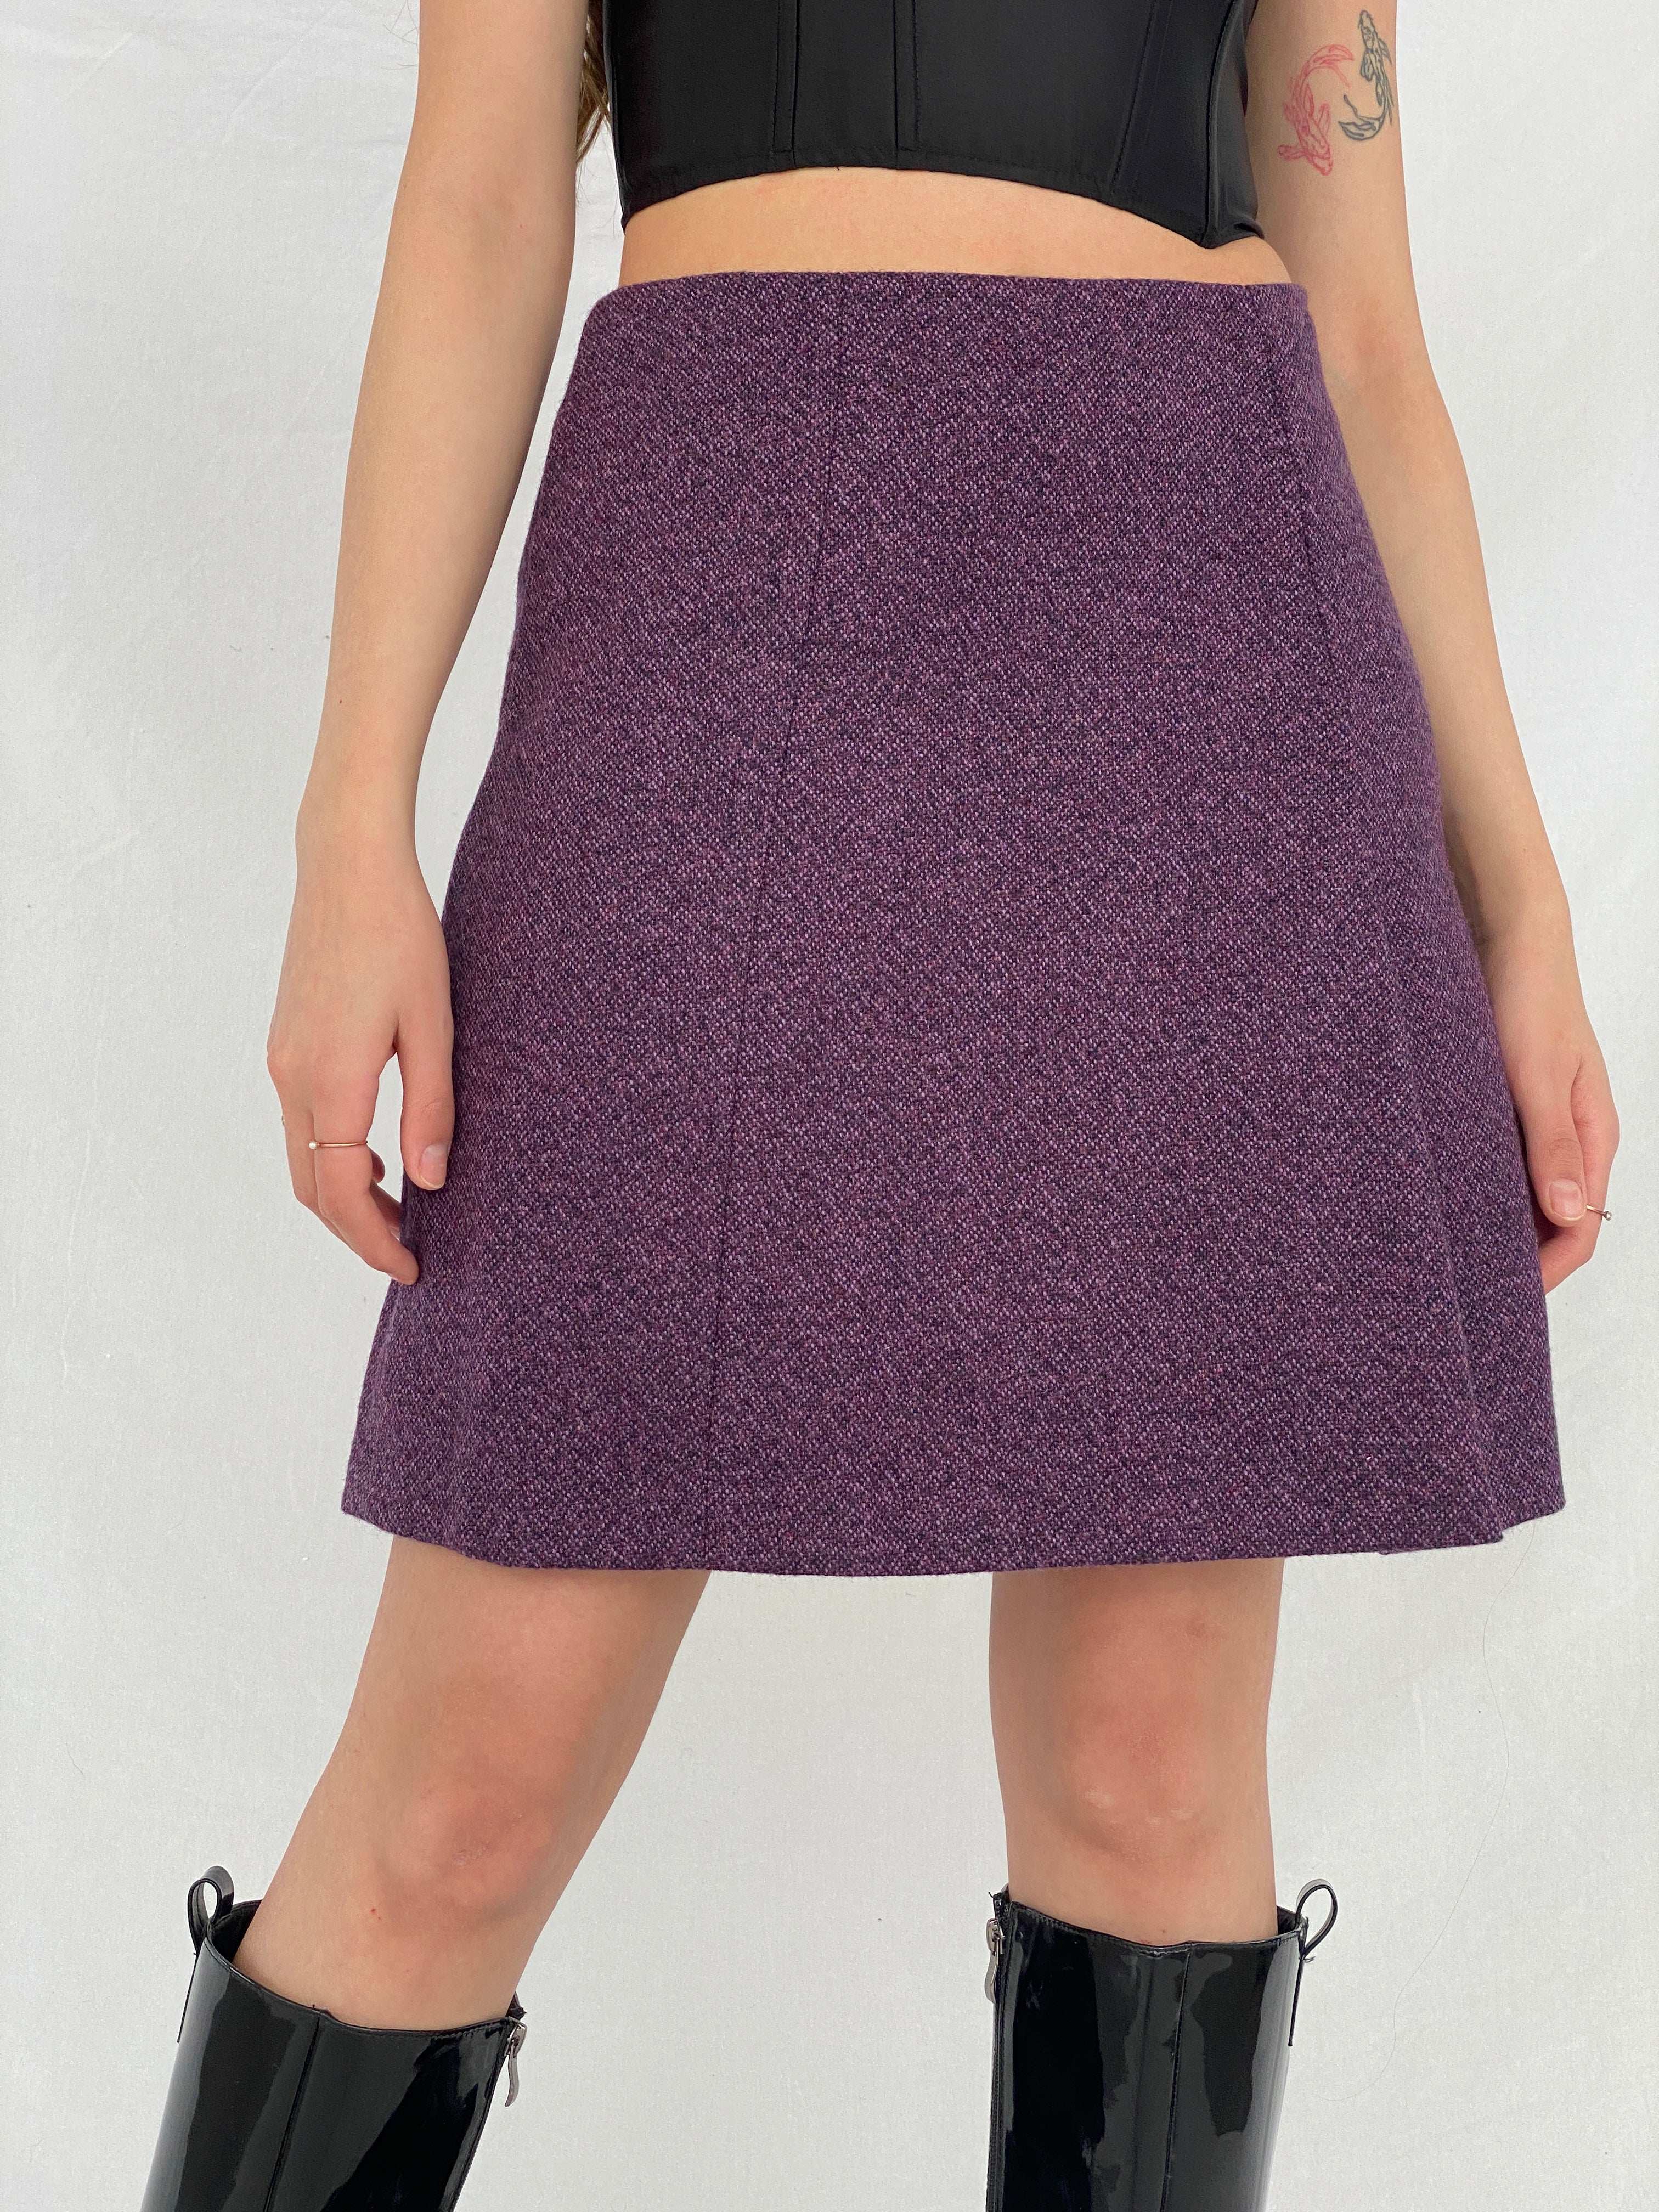 Vintage Marilyn Anselm Design For Hobbs Mini Skirt Size Medium - Balagan Vintage Mini Skirt 00s, 90s, mini skirt, Mira